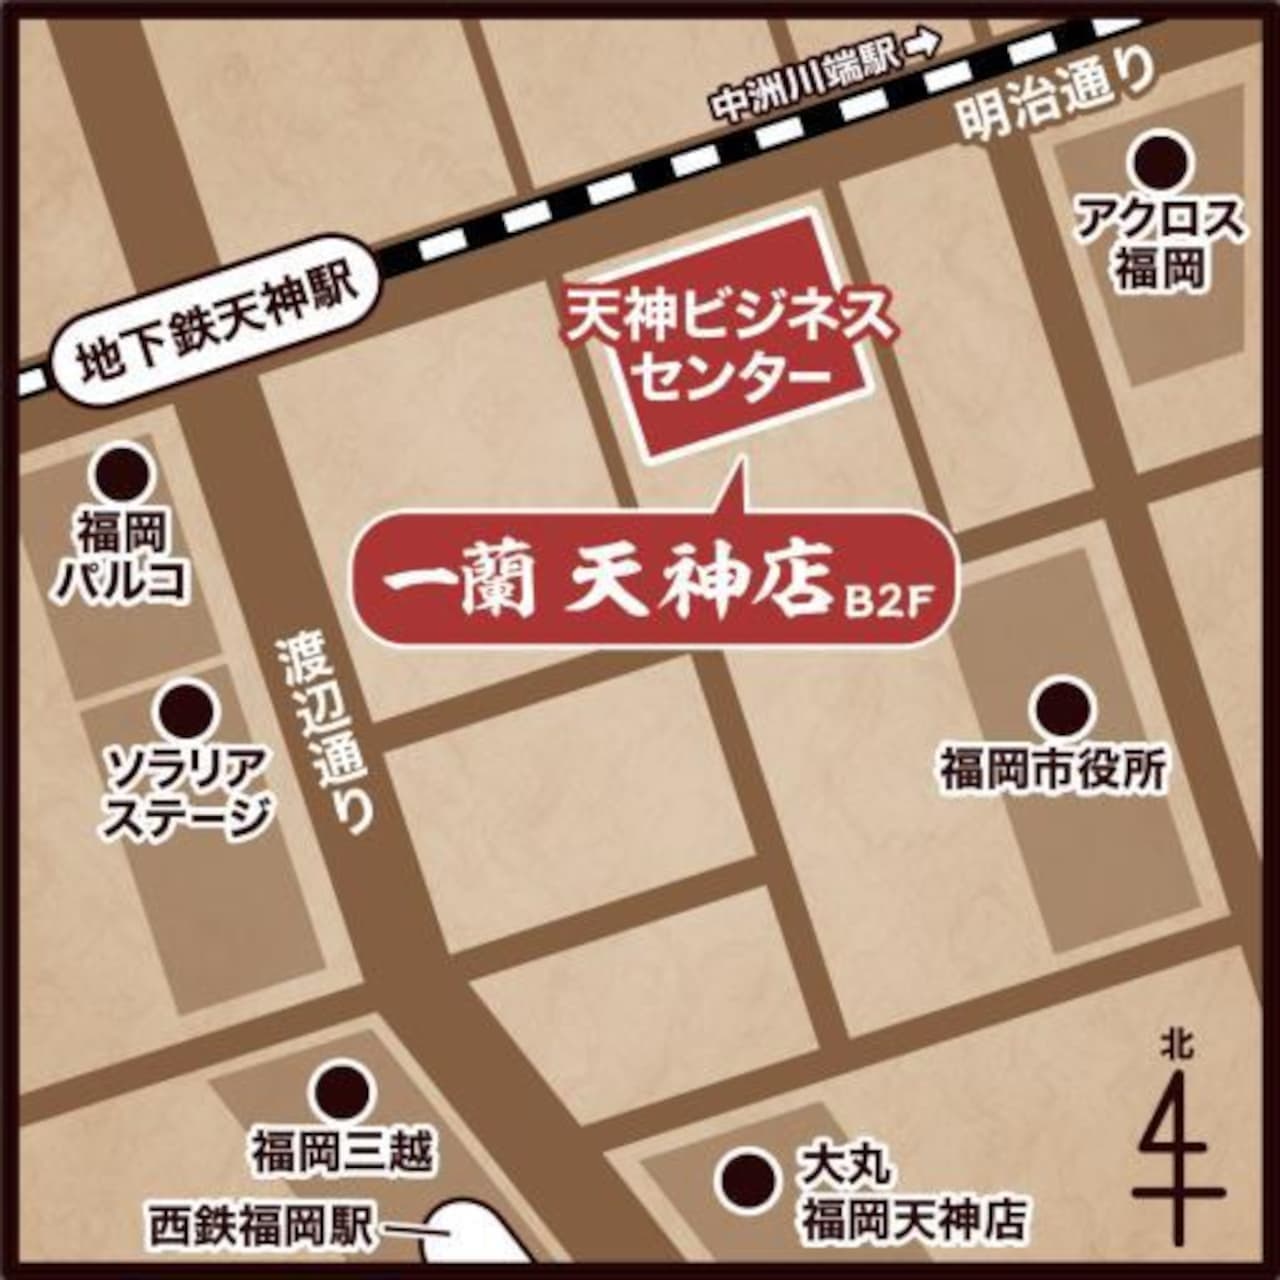 Ichiran "Tenjin Store" Location